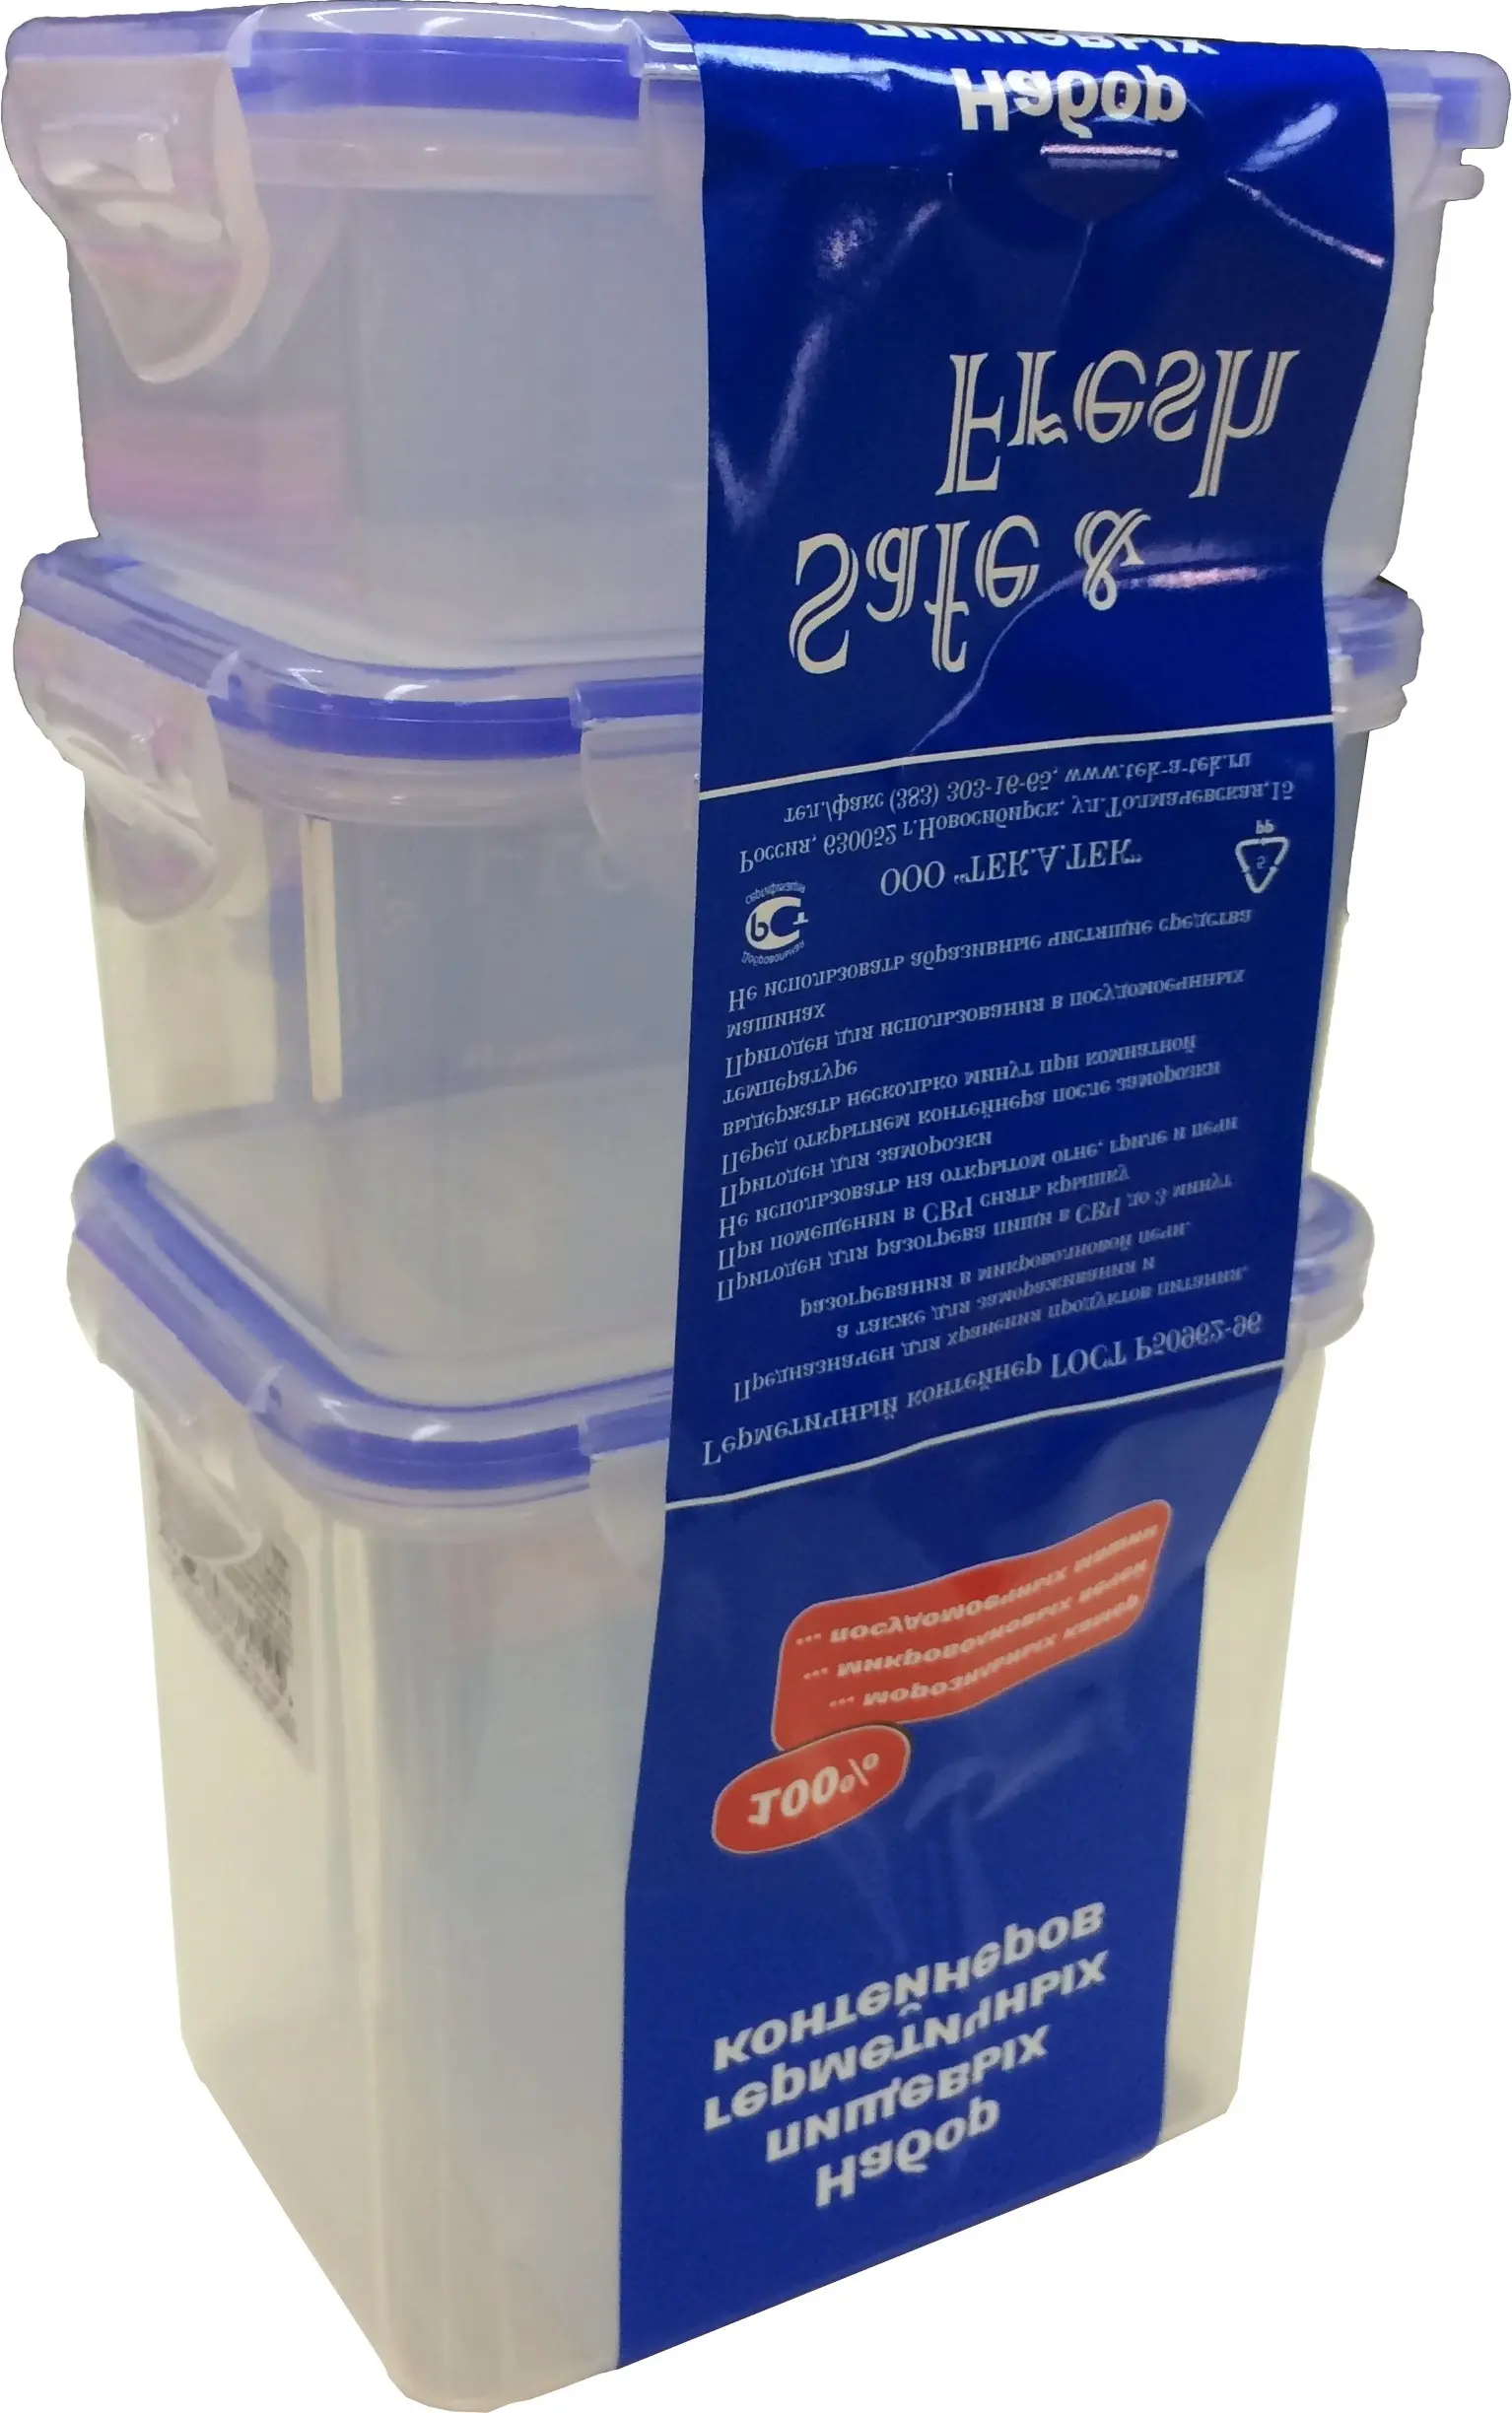 Пищевые контейнеры ТЕК.А.ТЕК SF-Н02-1 из 3-х шт. 0.35 Л., 0.47Л., 0.85Л.